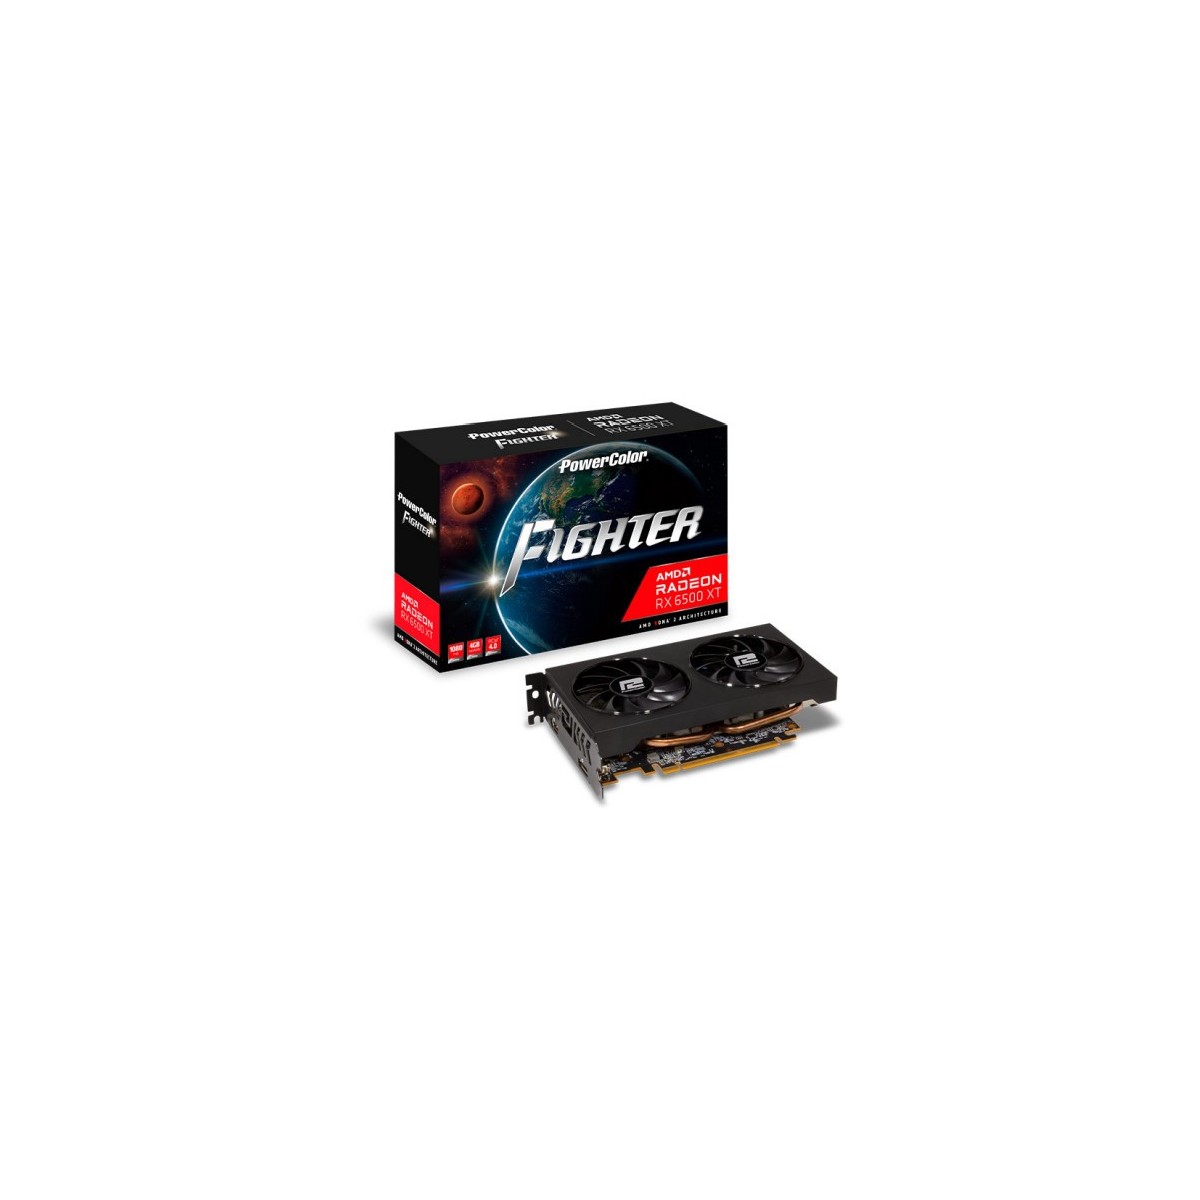 TUL Video Card AMD Radeon RX-6500XT Fighter 4GB GDDR6 64bit, 1x DP, 1x HDMI, 2 fan, 2 slot